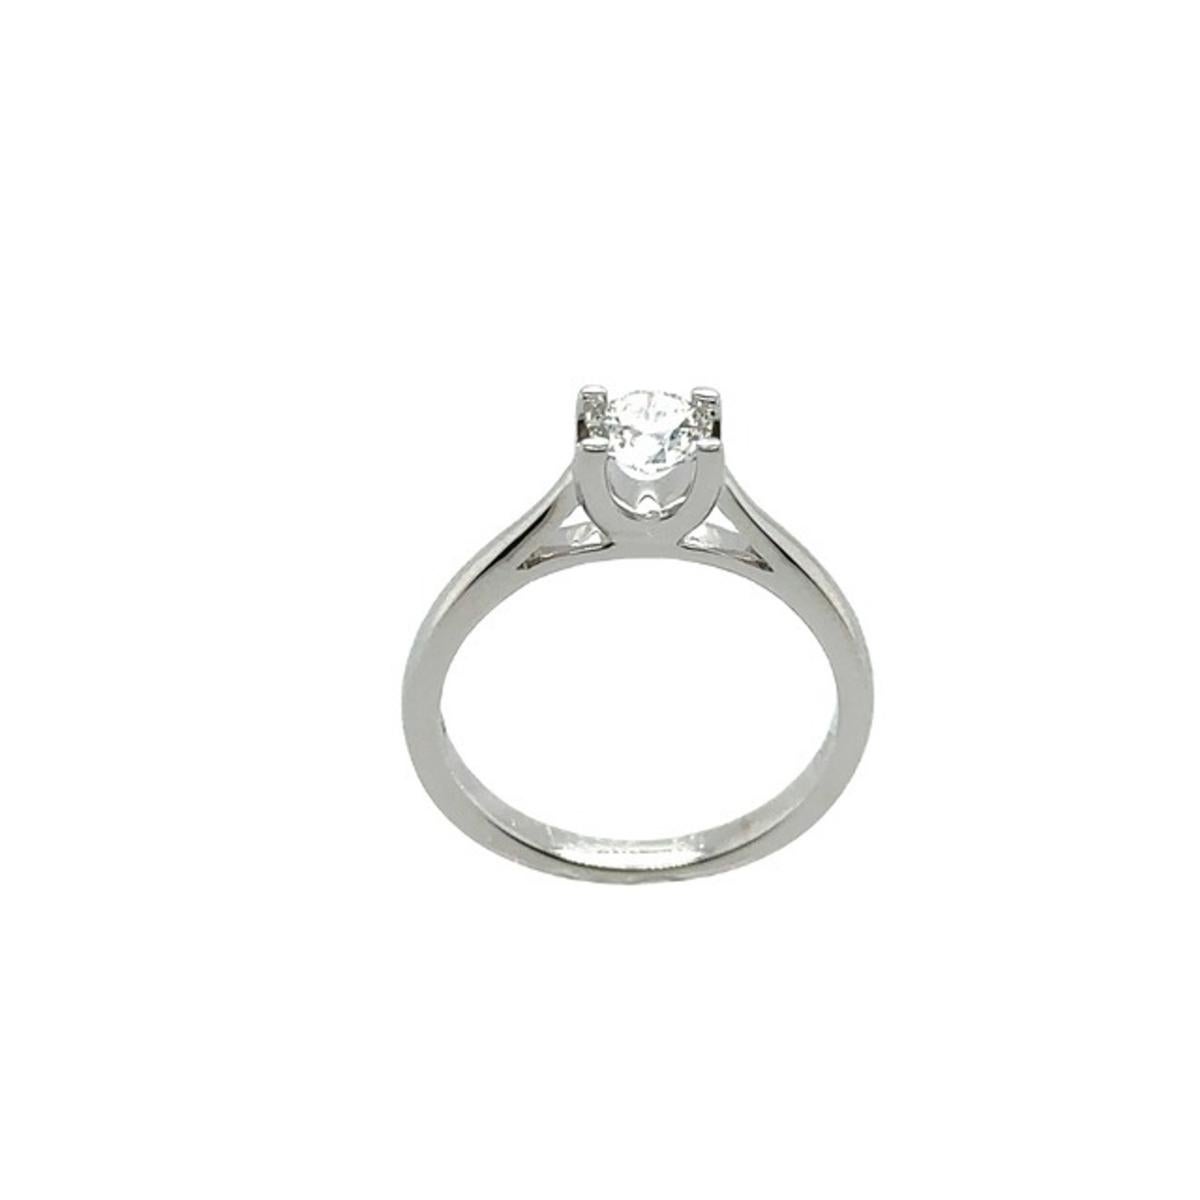 Ein eleganter Diamantring für Ihre Verlobung, besetzt mit einem 0,39 Karat runden Naturdiamanten im Brillantschliff in einer 4-Krallen-Fassung aus 18 Karat Weißgold, mit Innengravur 